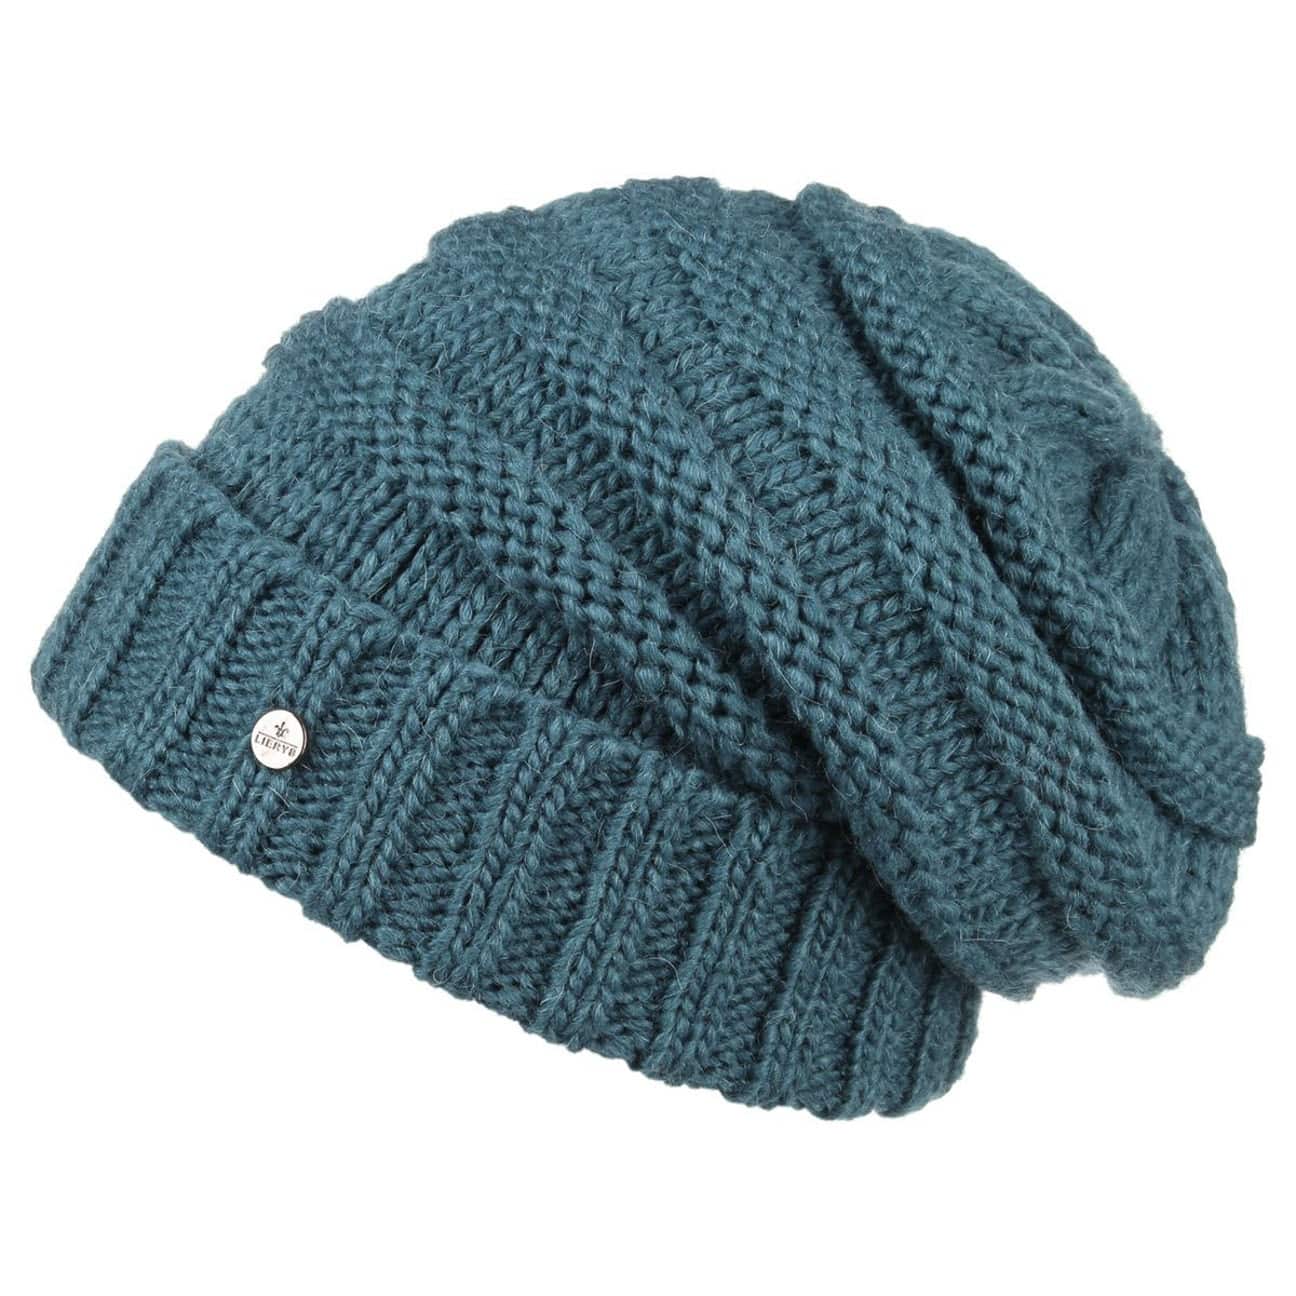 tricoter un bonnet long